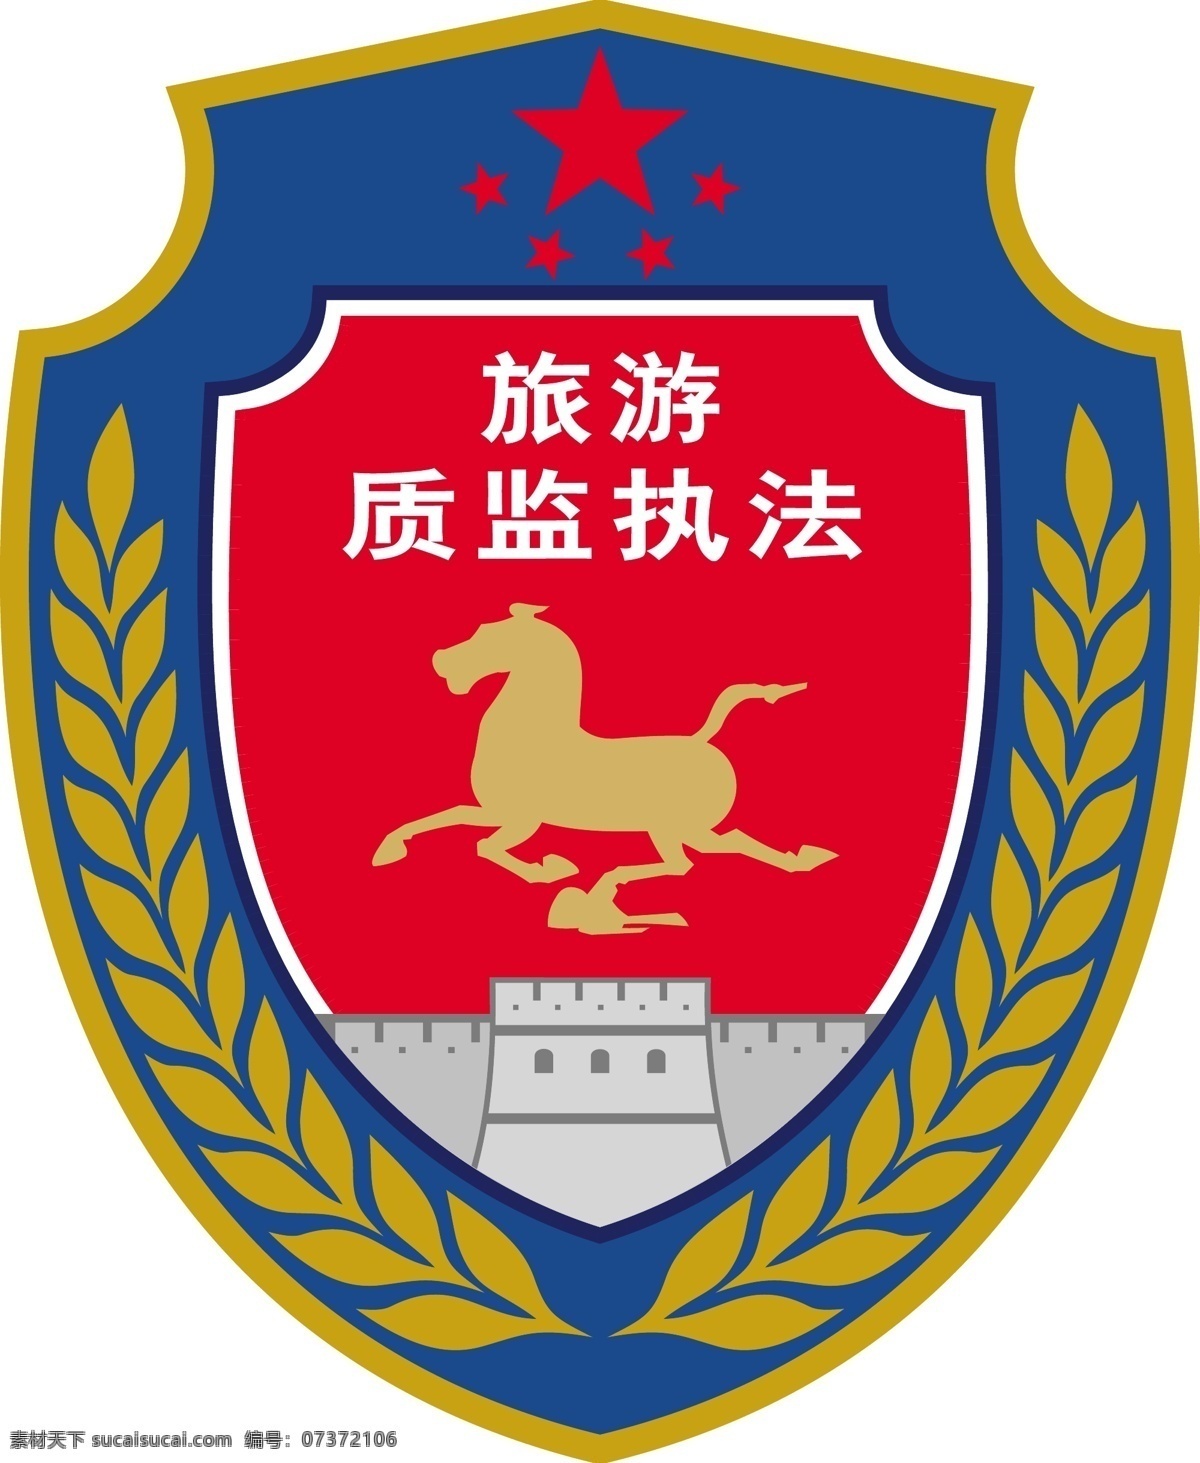 旅游 质监 执法 标志 中国旅游 质监执法 logo 旅游质监执法 企业 标识标志图标 矢量